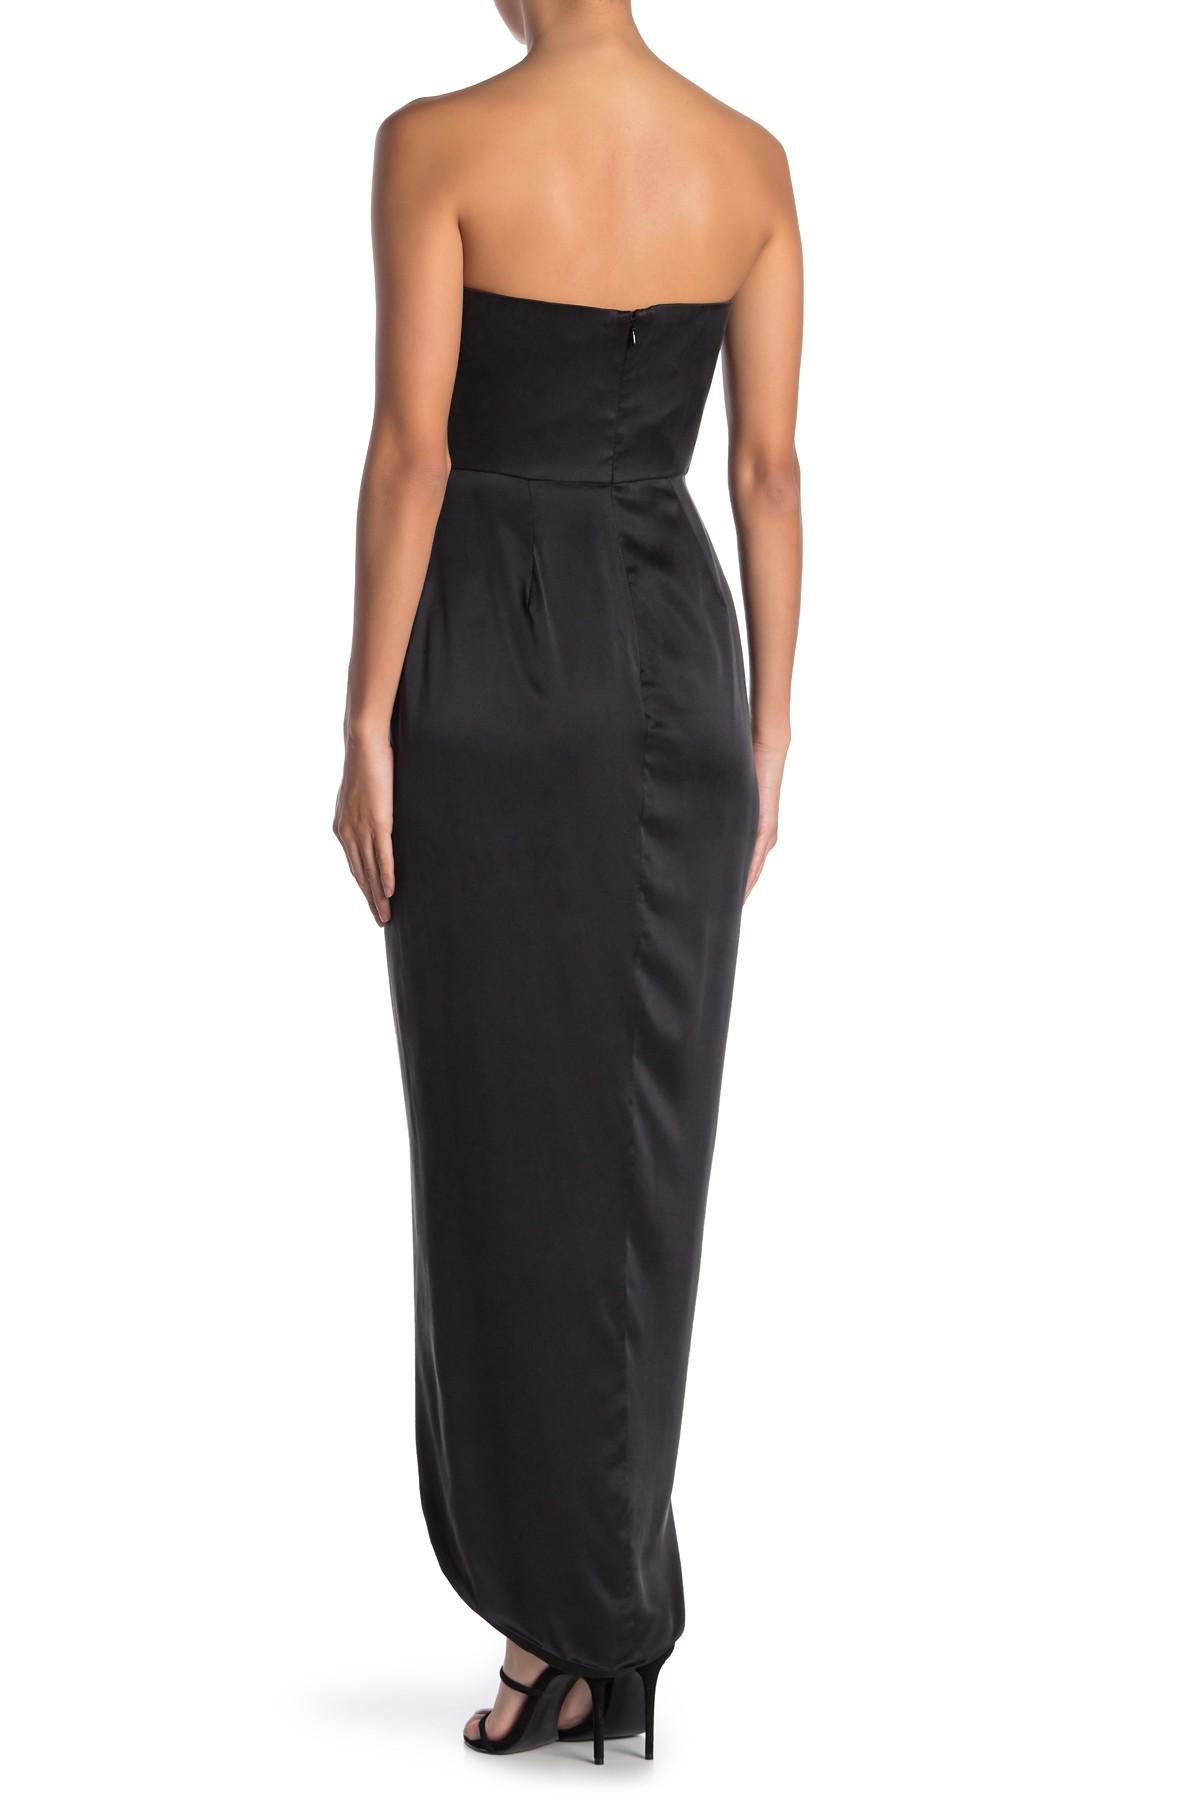 Yumi Kim Bombshell Strapless Silk Maxi Dress in Black - Lyst